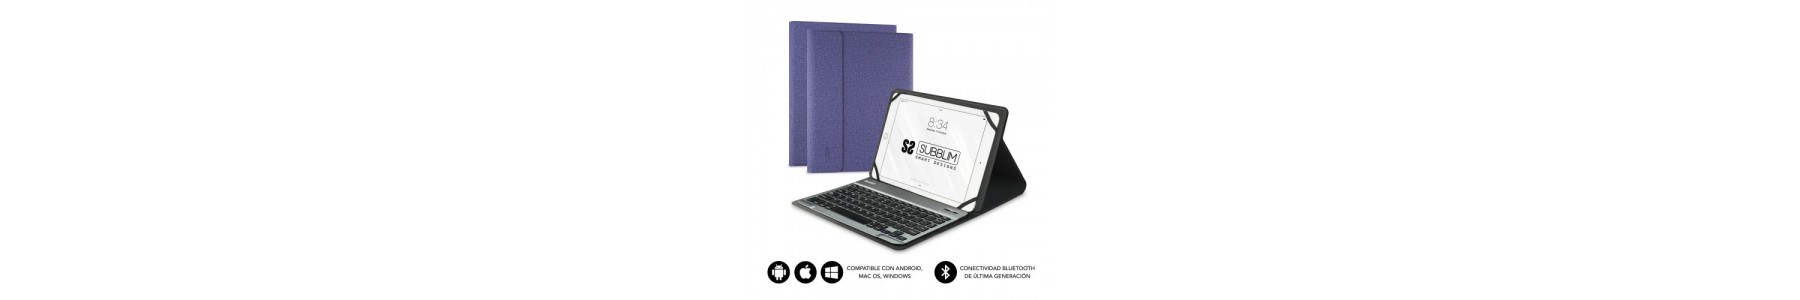 Accesorios Smartphone/Tablet